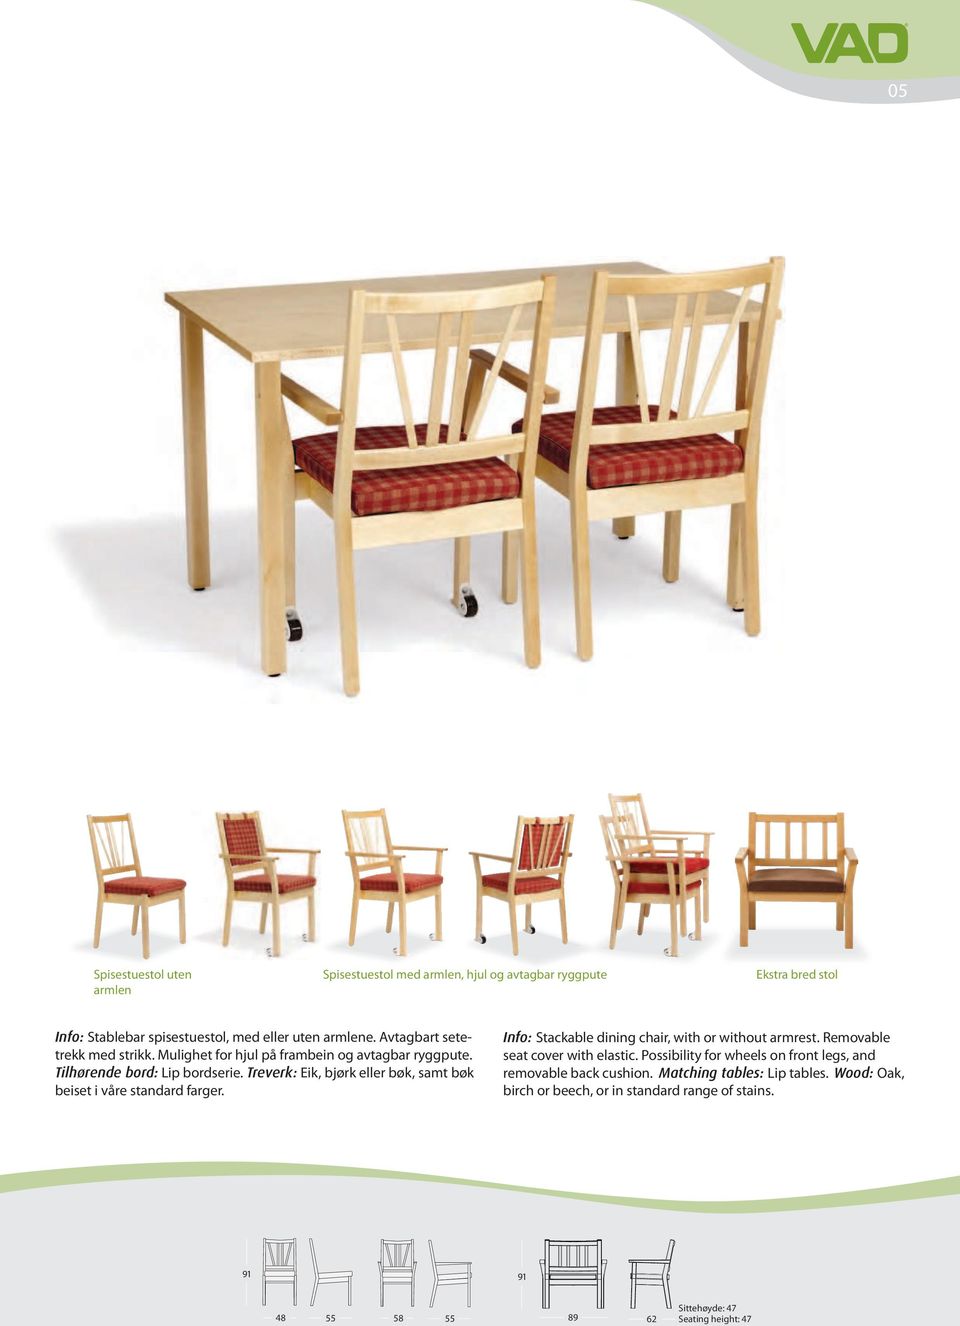 Treverk: Eik, bjørk eller bøk, samt bøk beiset i våre standard farger. Info: Stackable dining chair, with or without armrest. Removable seat cover with elastic.